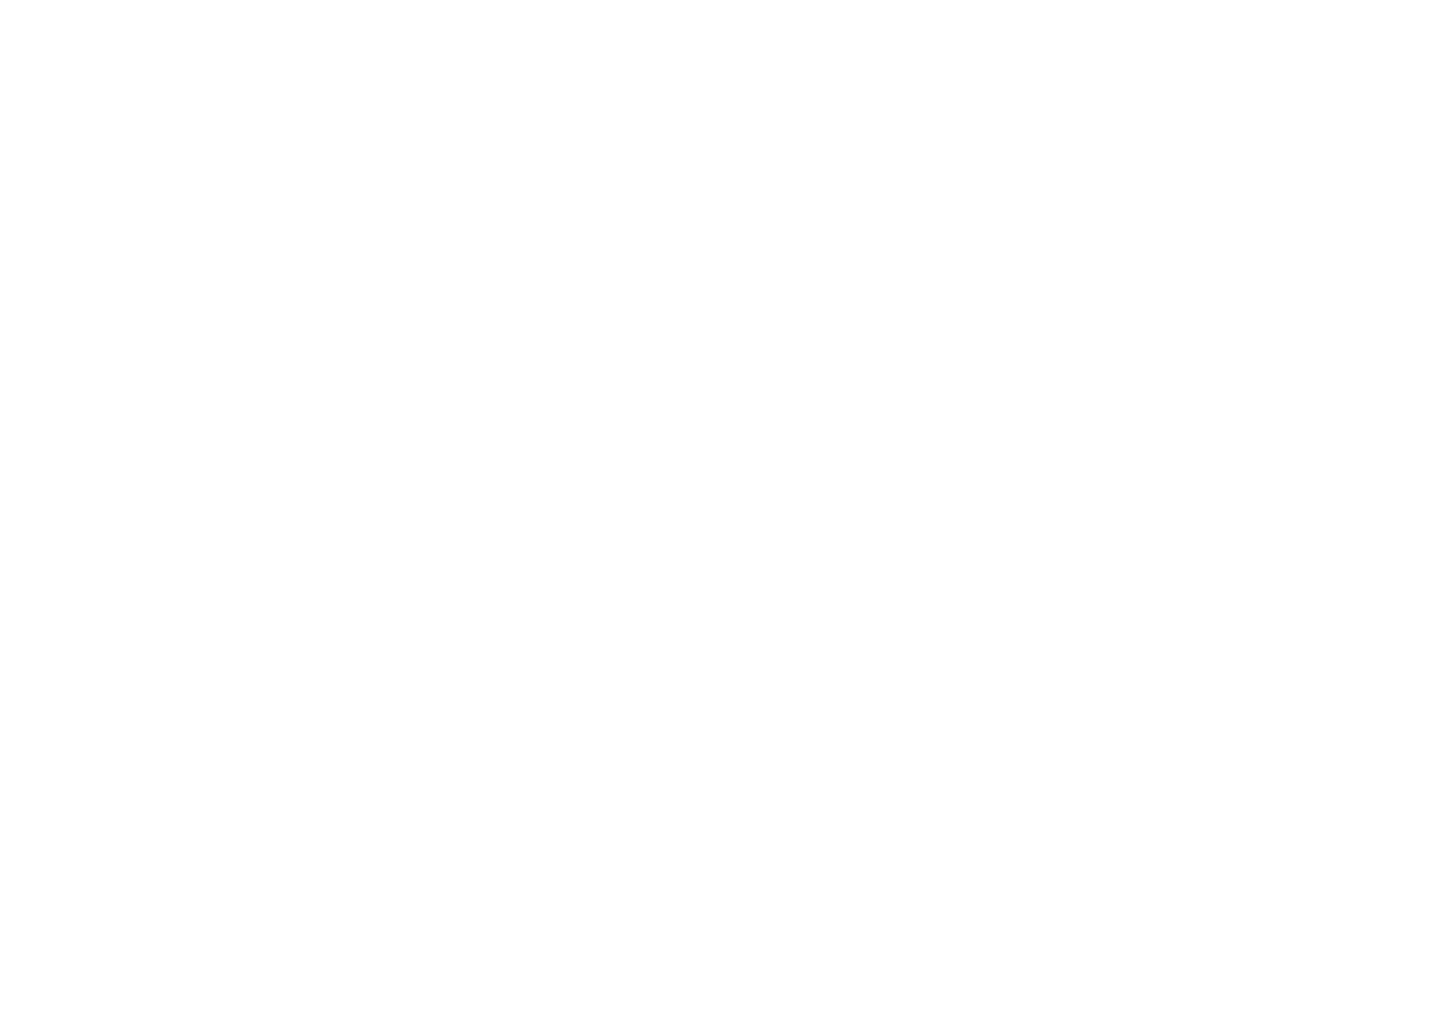 PORTA FORTUNA - image 1